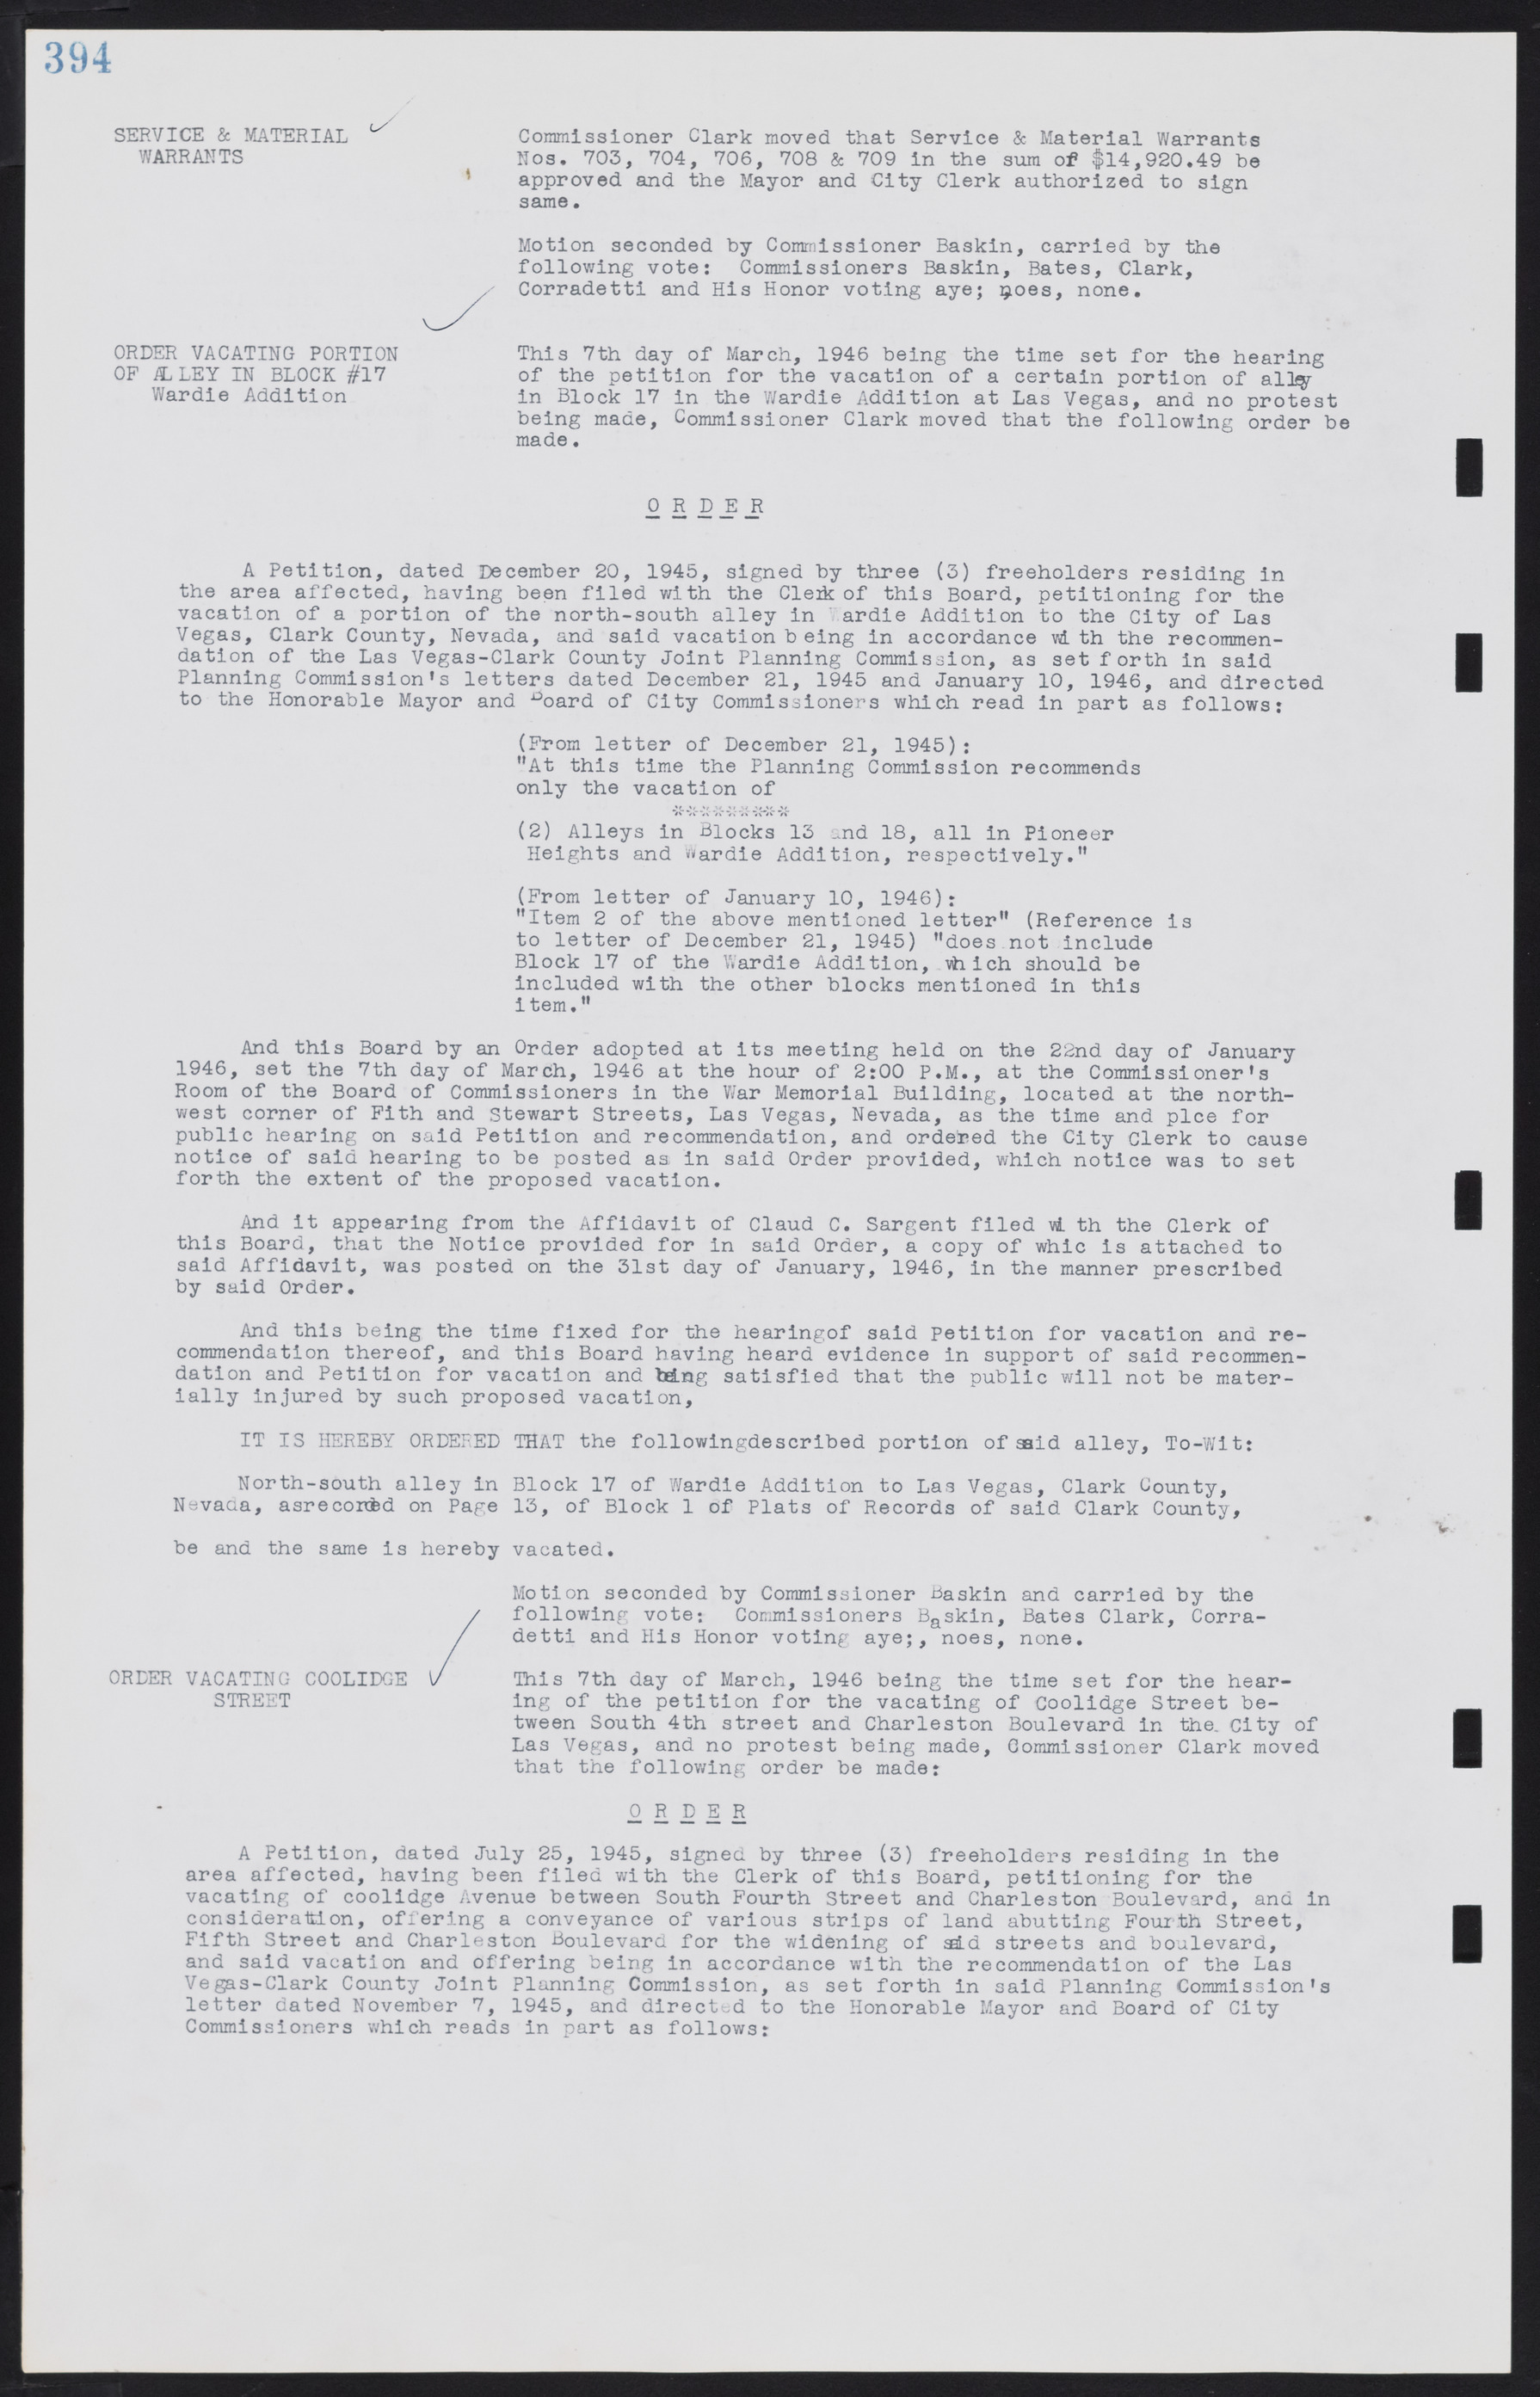 Las Vegas City Commission Minutes, August 11, 1942 to December 30, 1946, lvc000005-421